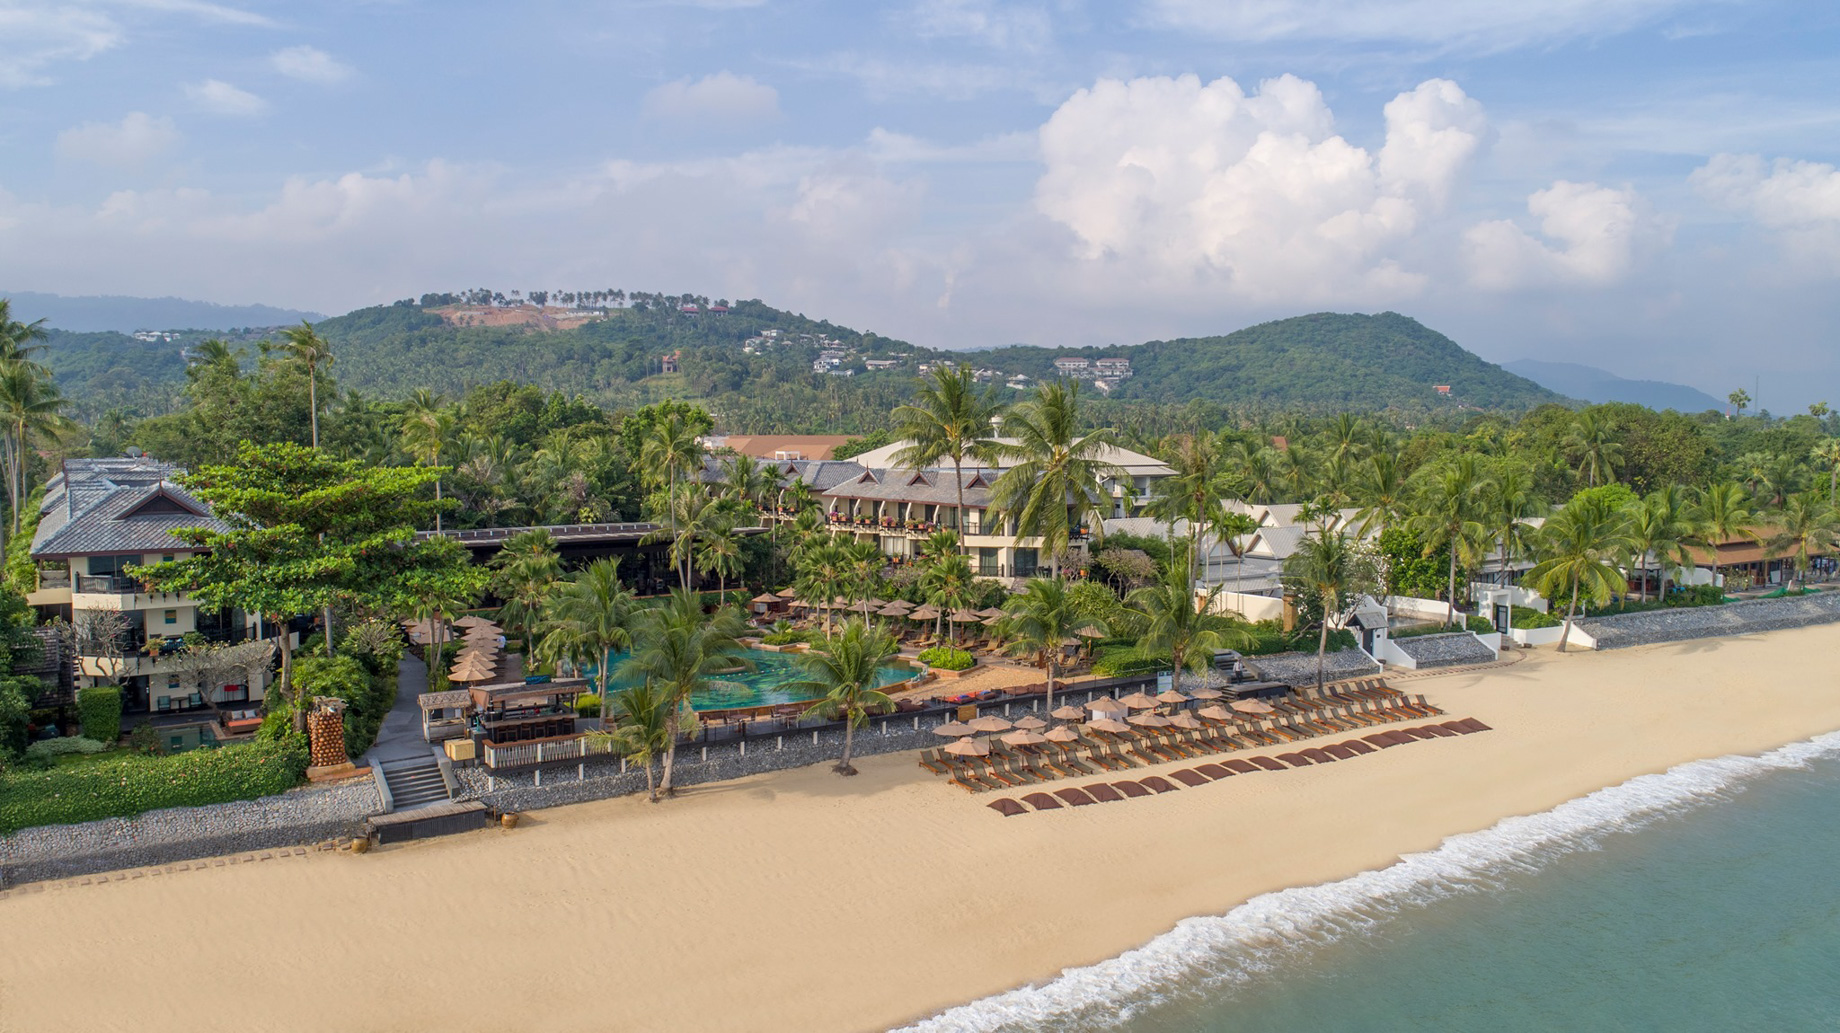 Anantara Bophut Koh Samui Resort – Thailand – Aerial View